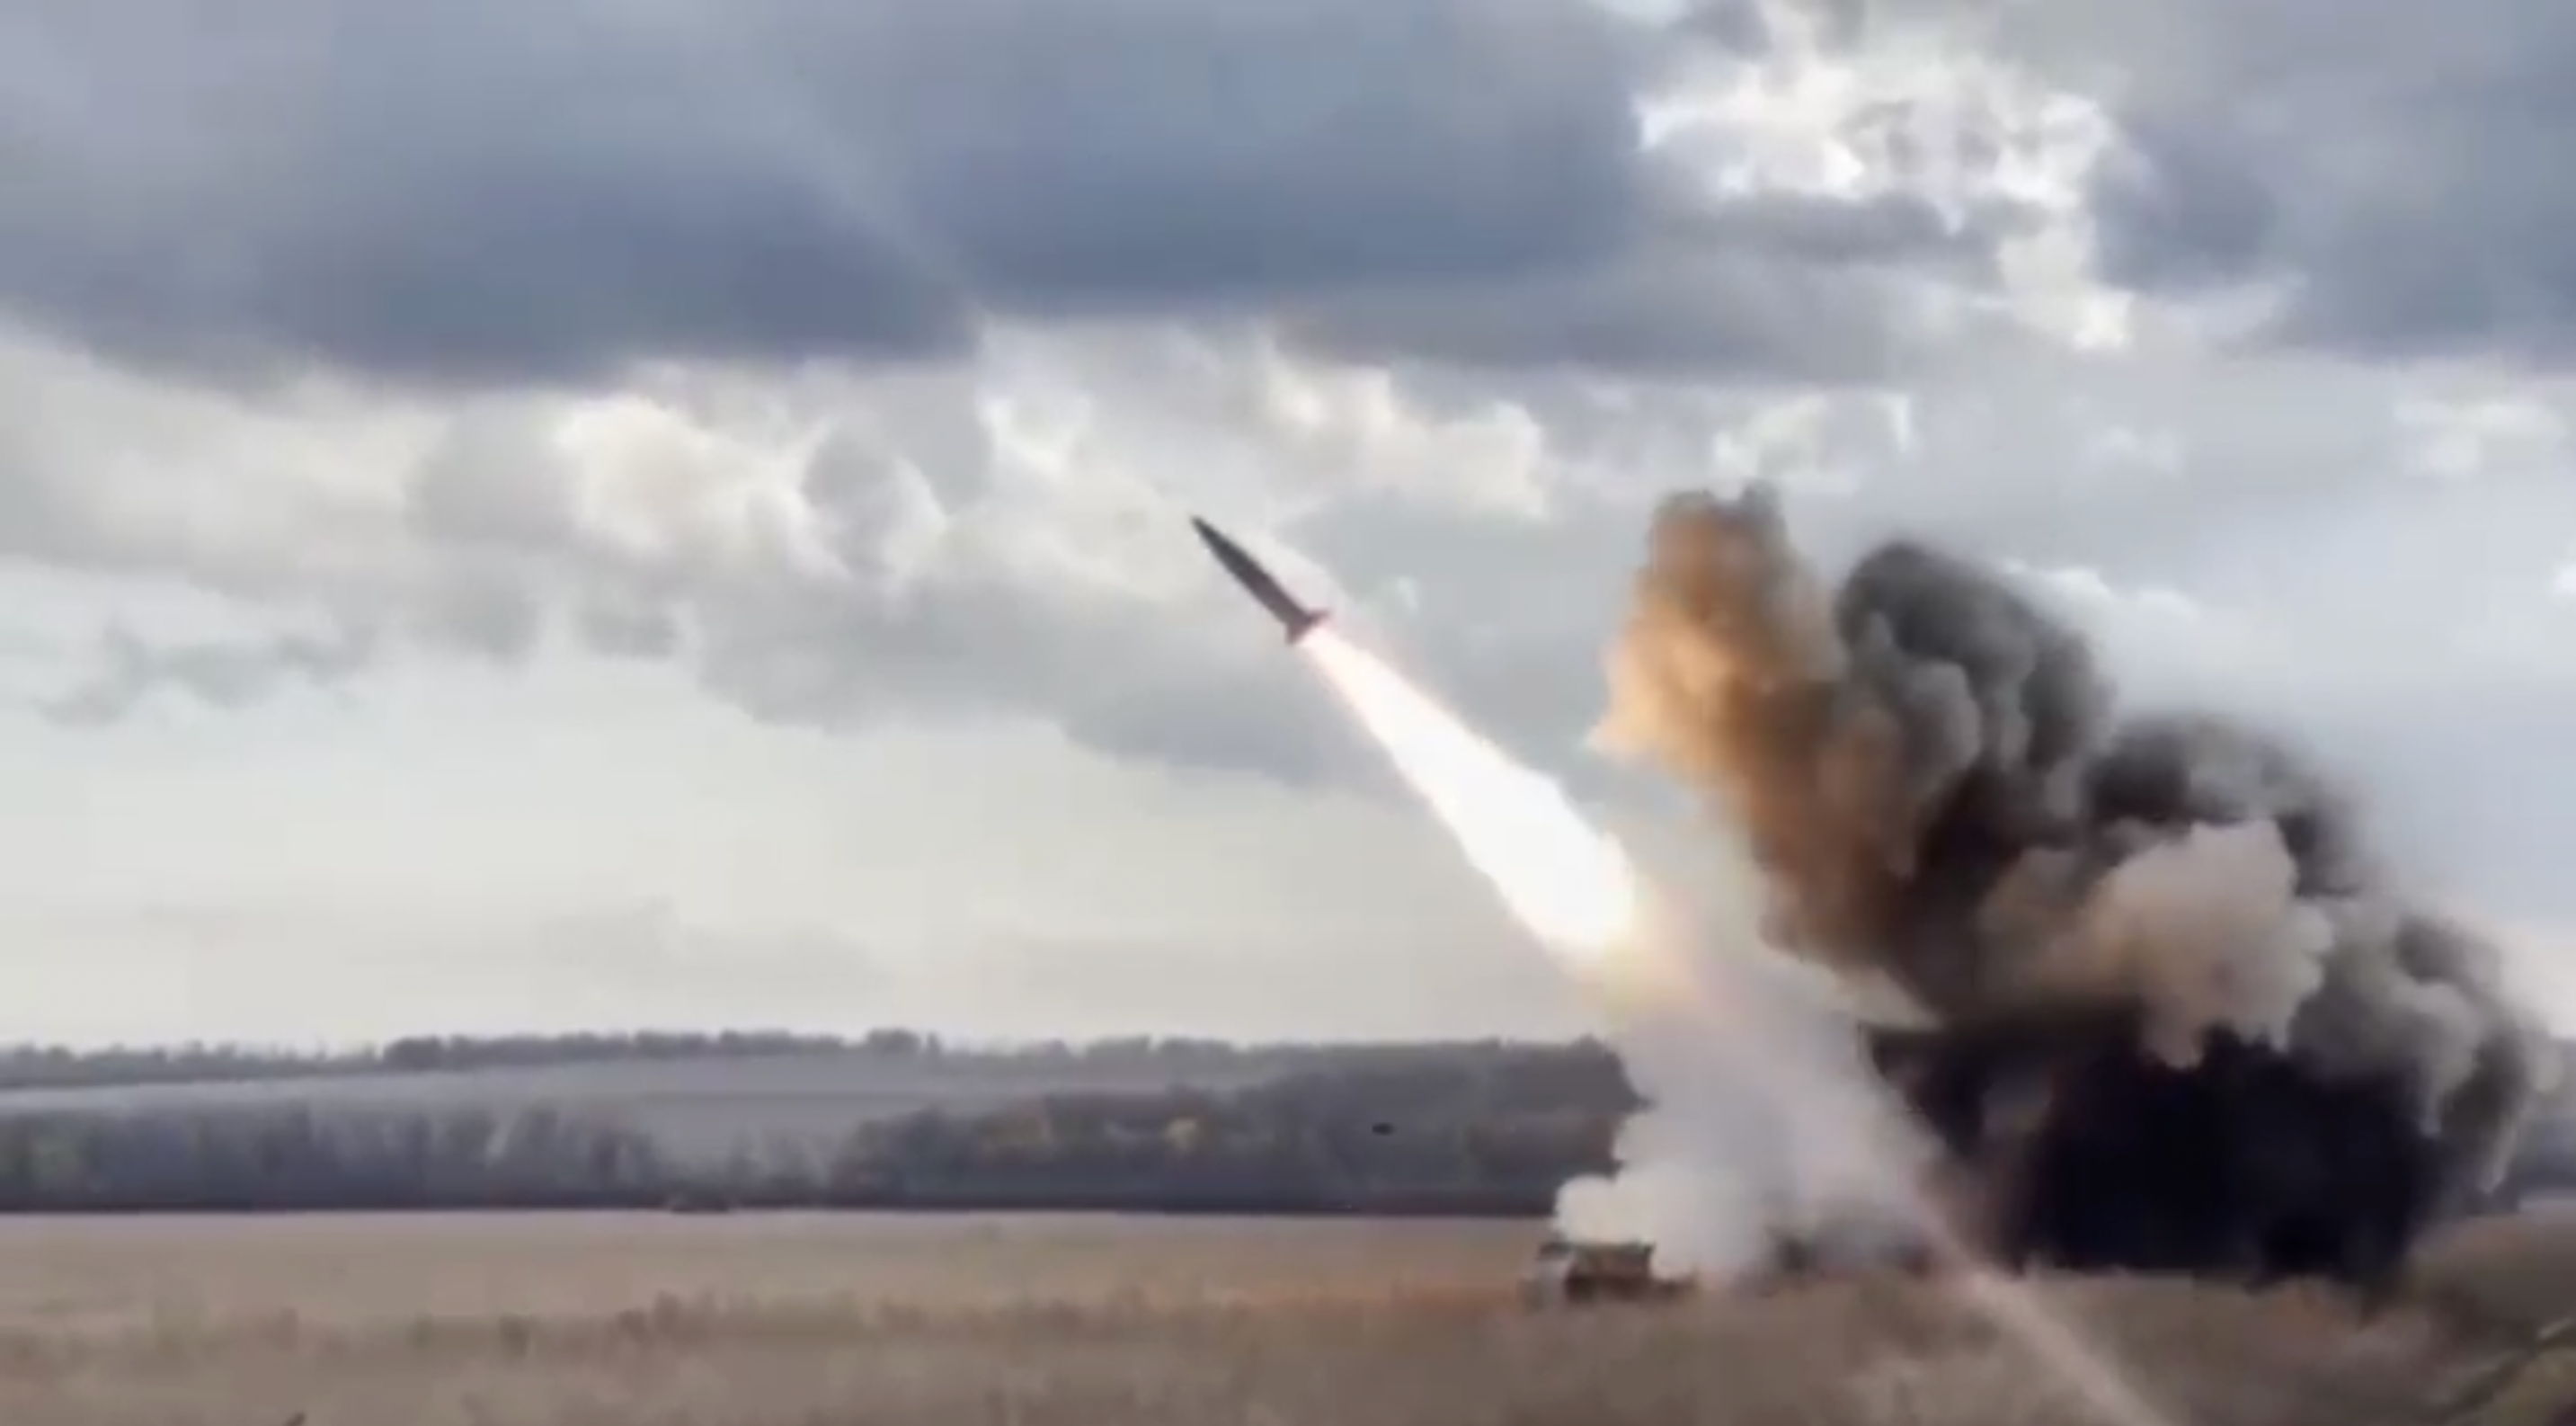 De AFU liet een video zien van hoe ze drie ATACMS ballistische raketten lanceerden met HIMARS MLRSs.